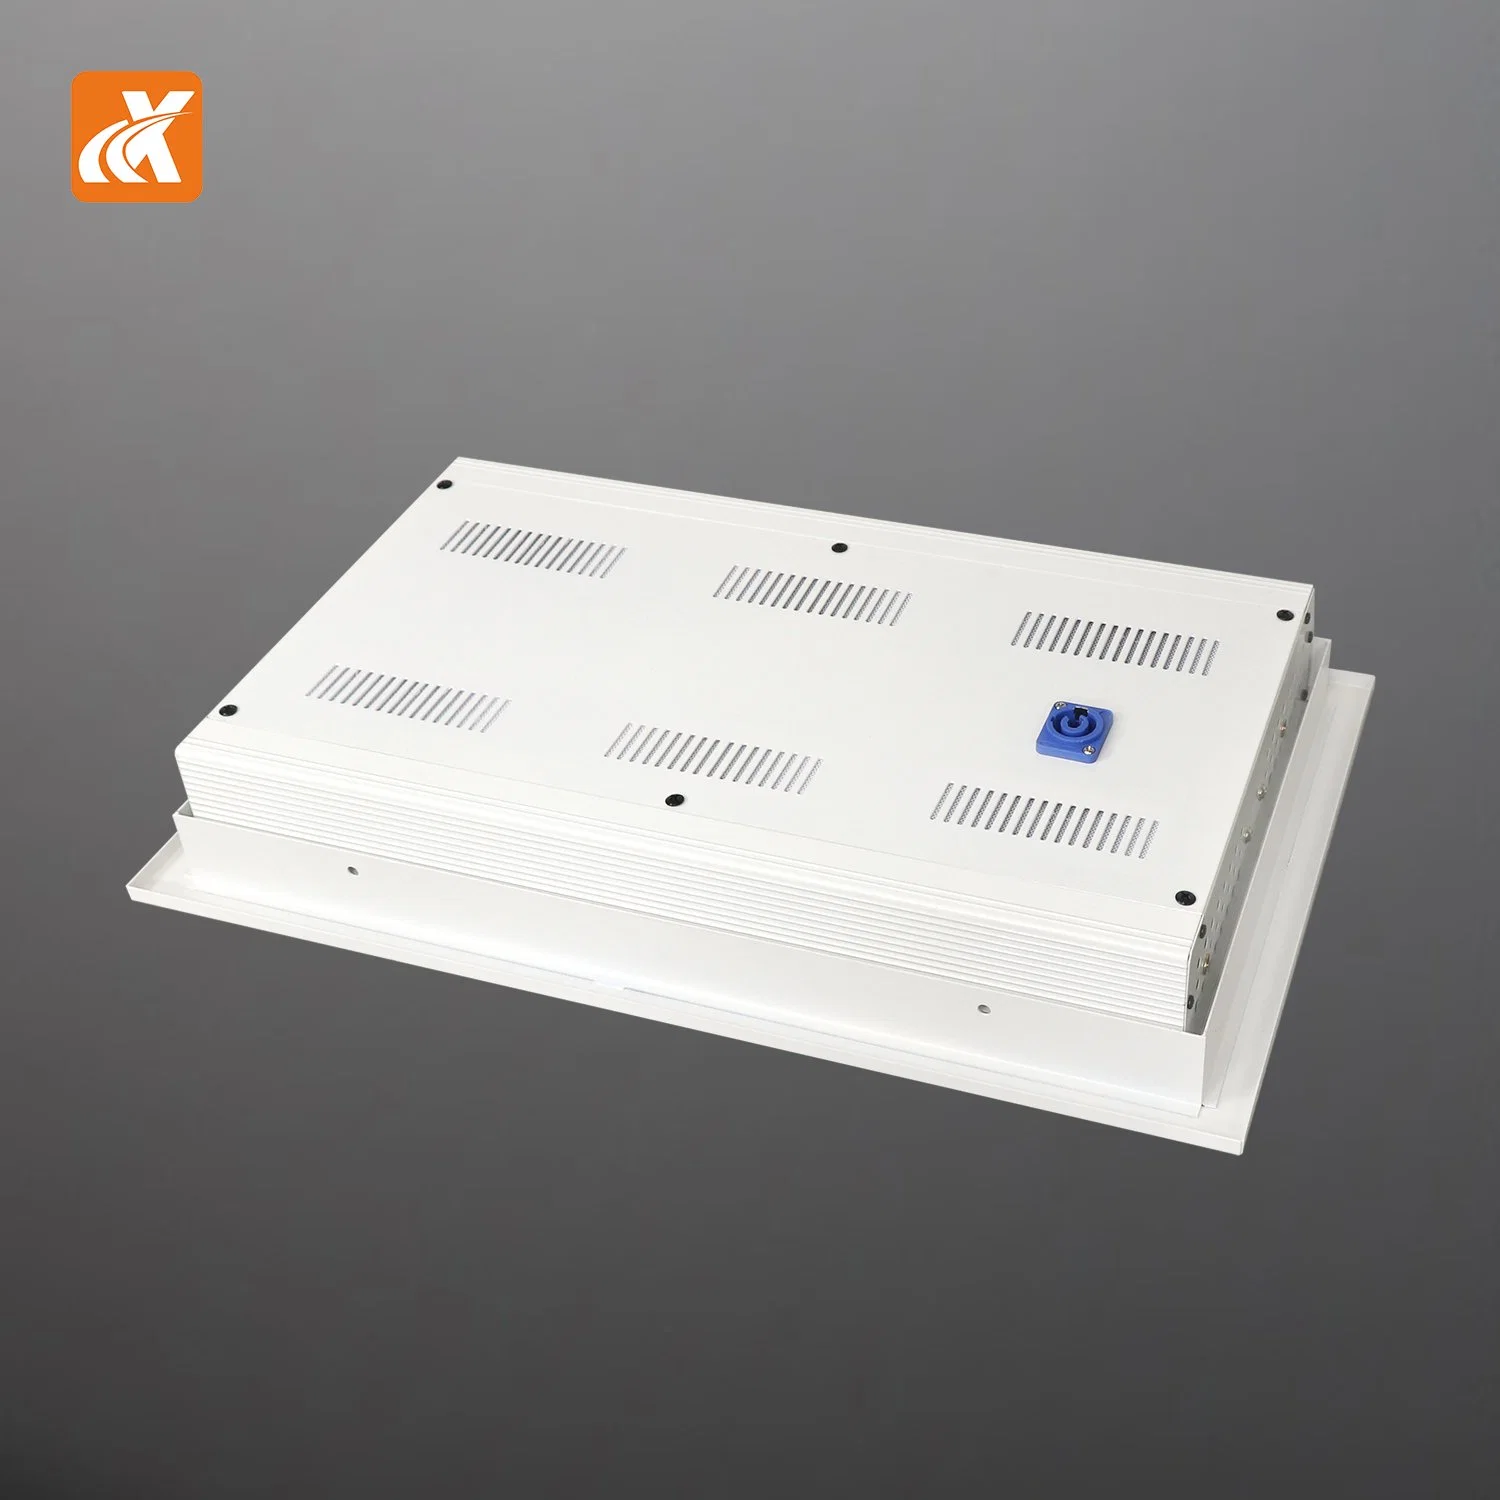 لوحة LED طراز LED طراز Q100 CE ذات إمكانية البيع السريع باستخدام RoHS بقدرة 100 واط مزودة بلوحة مزودة بمؤشر LED طراز DMX512 إضاءة المرحلة غرفة الاجتماعات الخفيفة البث Eye Lamp